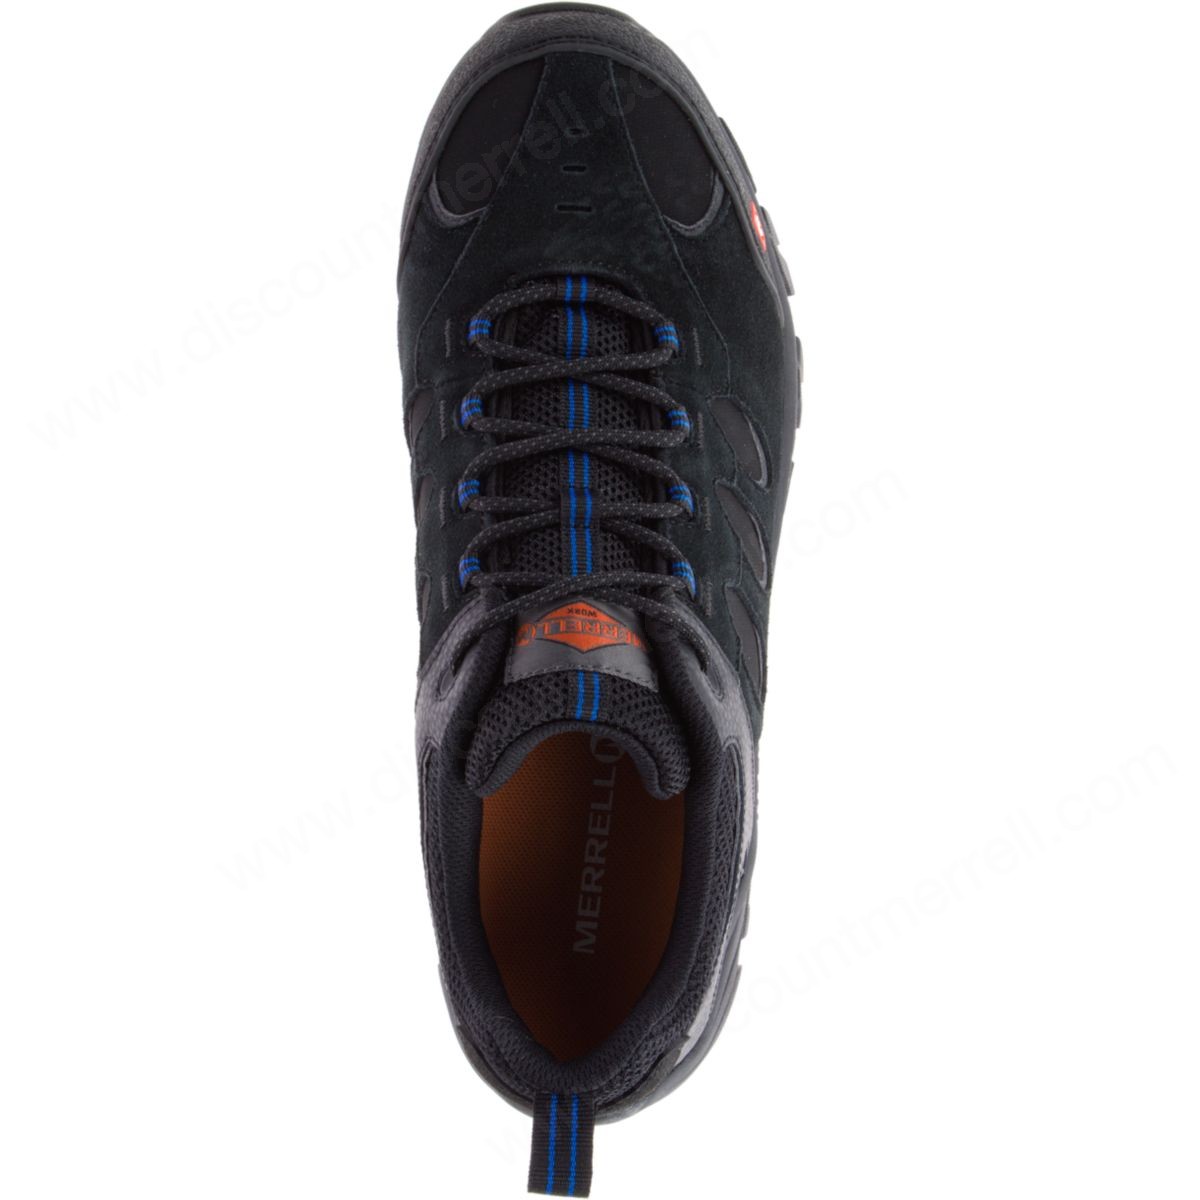 Merrell Man's Ridgepass Bolt Comp Toe Work Sneaker Wide Width Black - -2